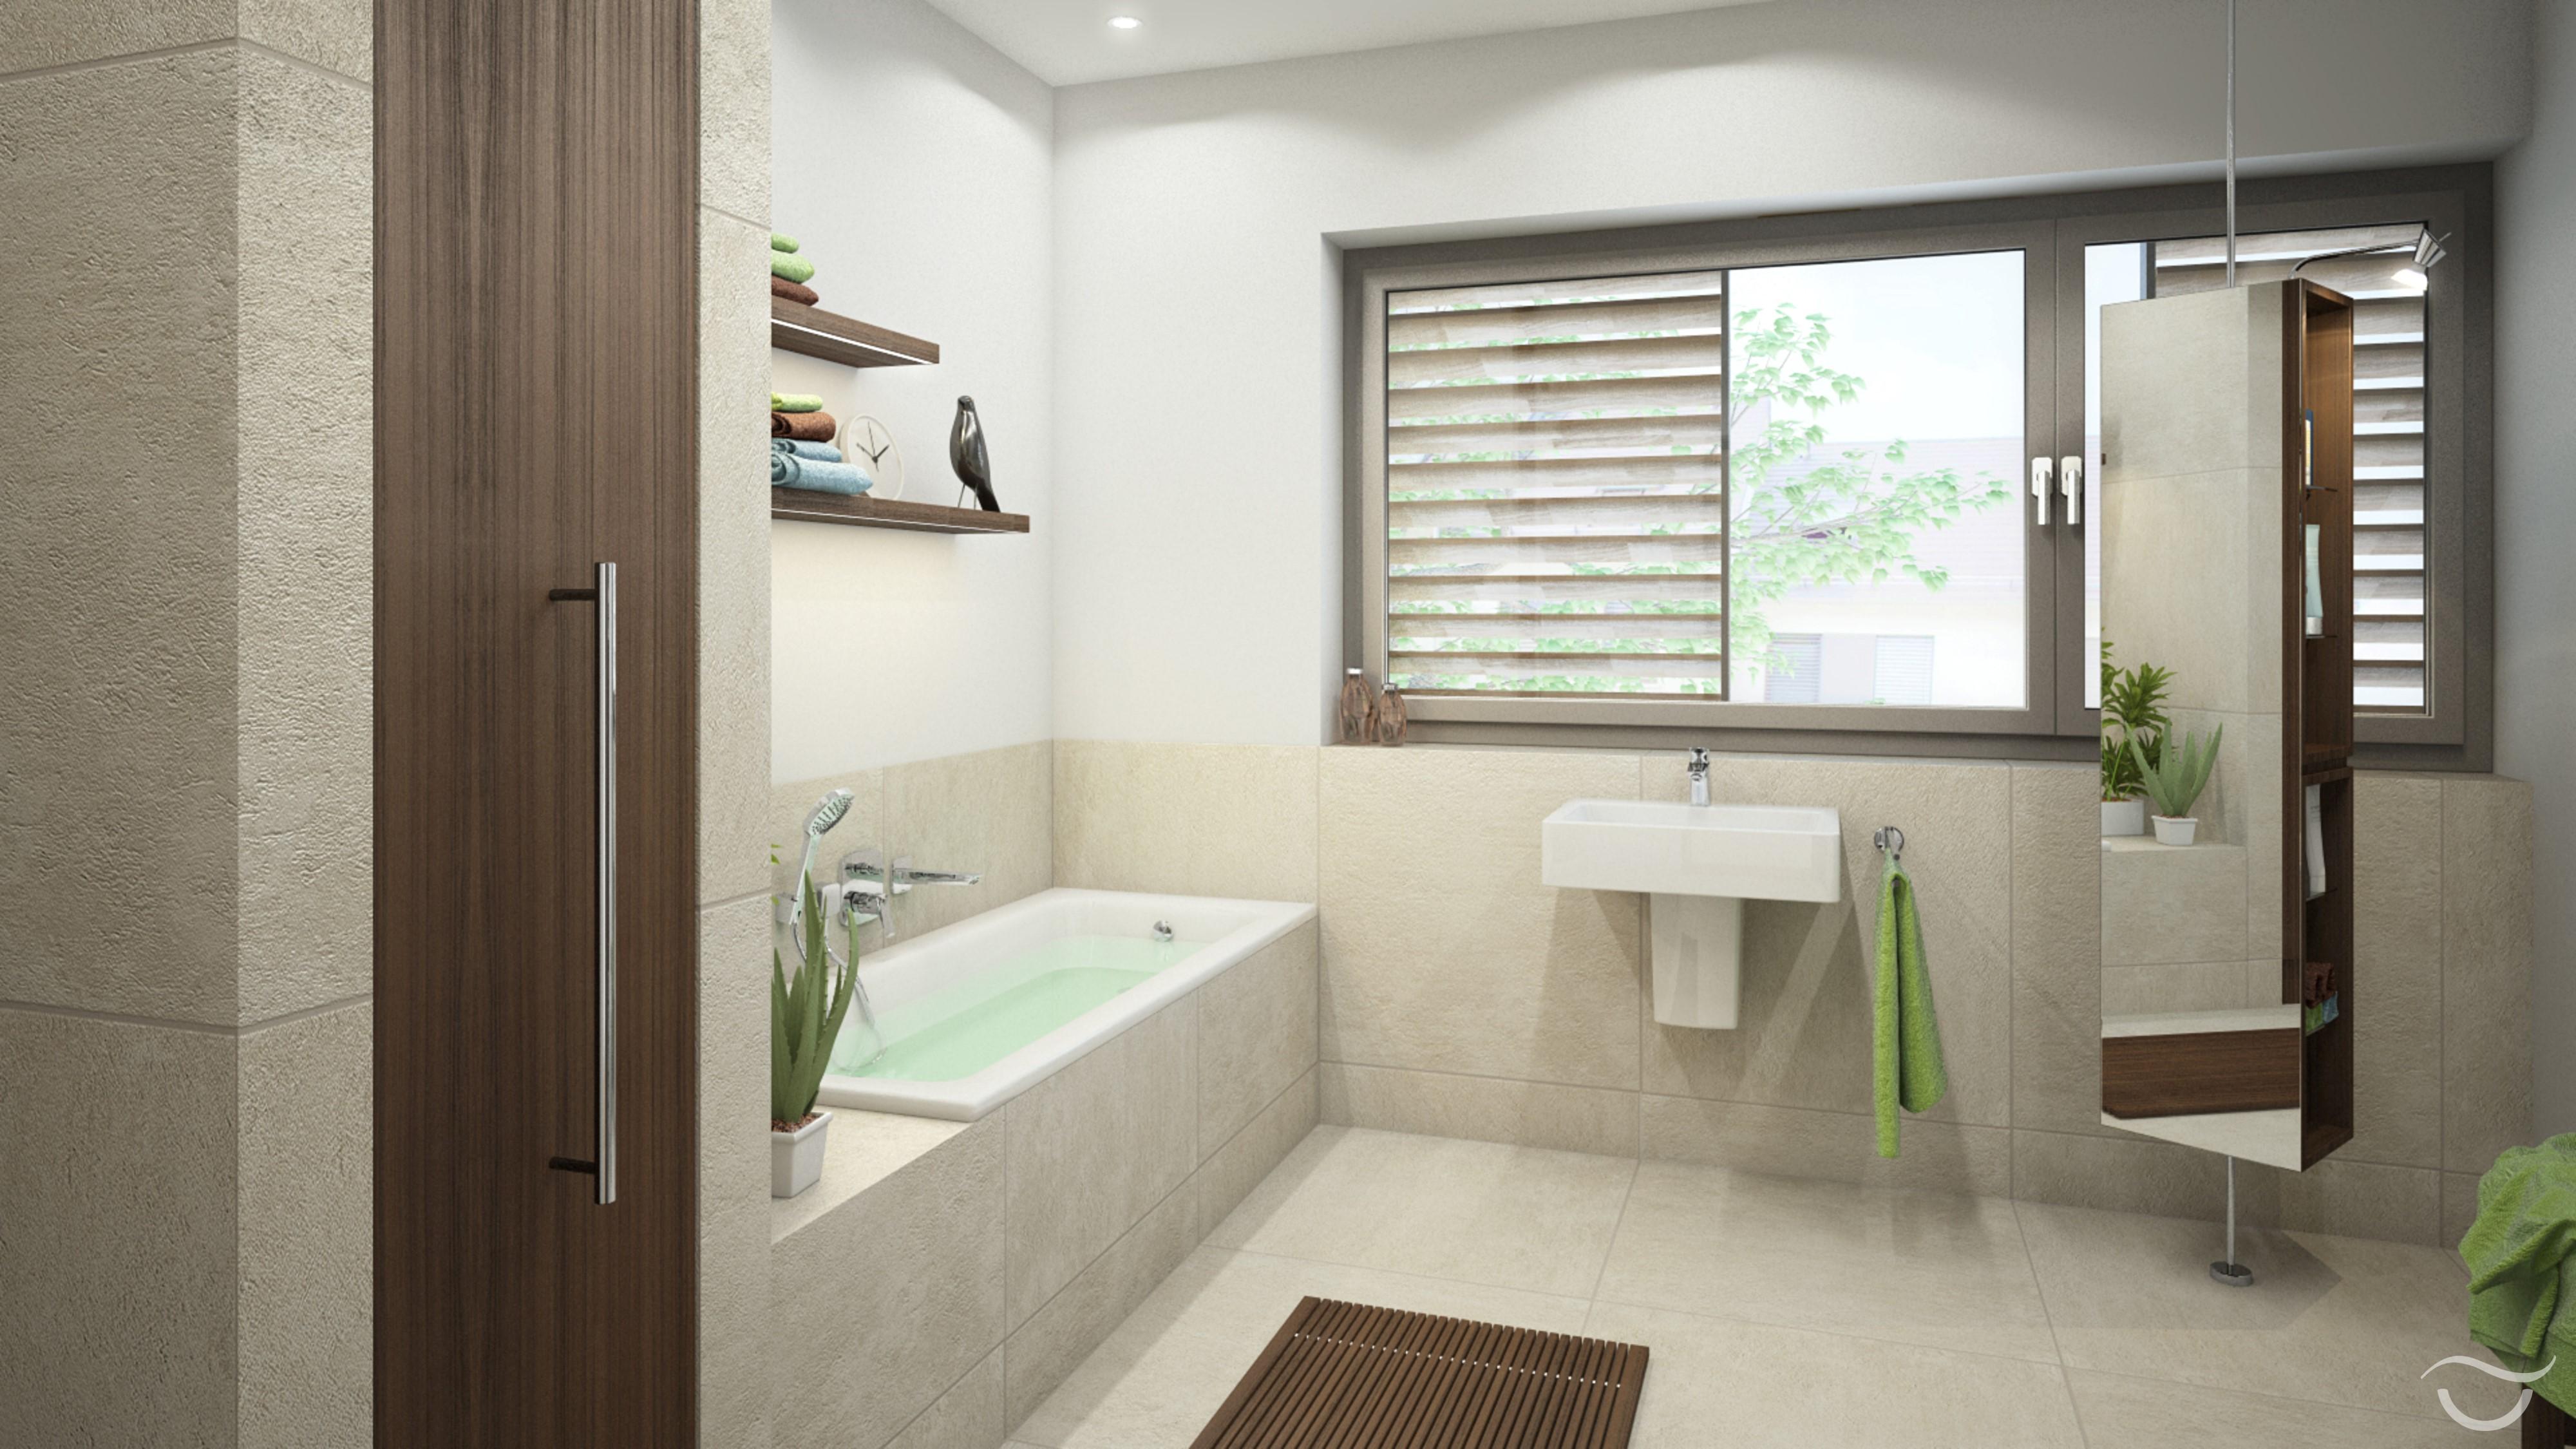 Naturmaterialen bringen Gemütlichkeit ins Bad #badewanne #spiegel #naturstein #waschbecken #einbauschrank ©Banovo GmbH